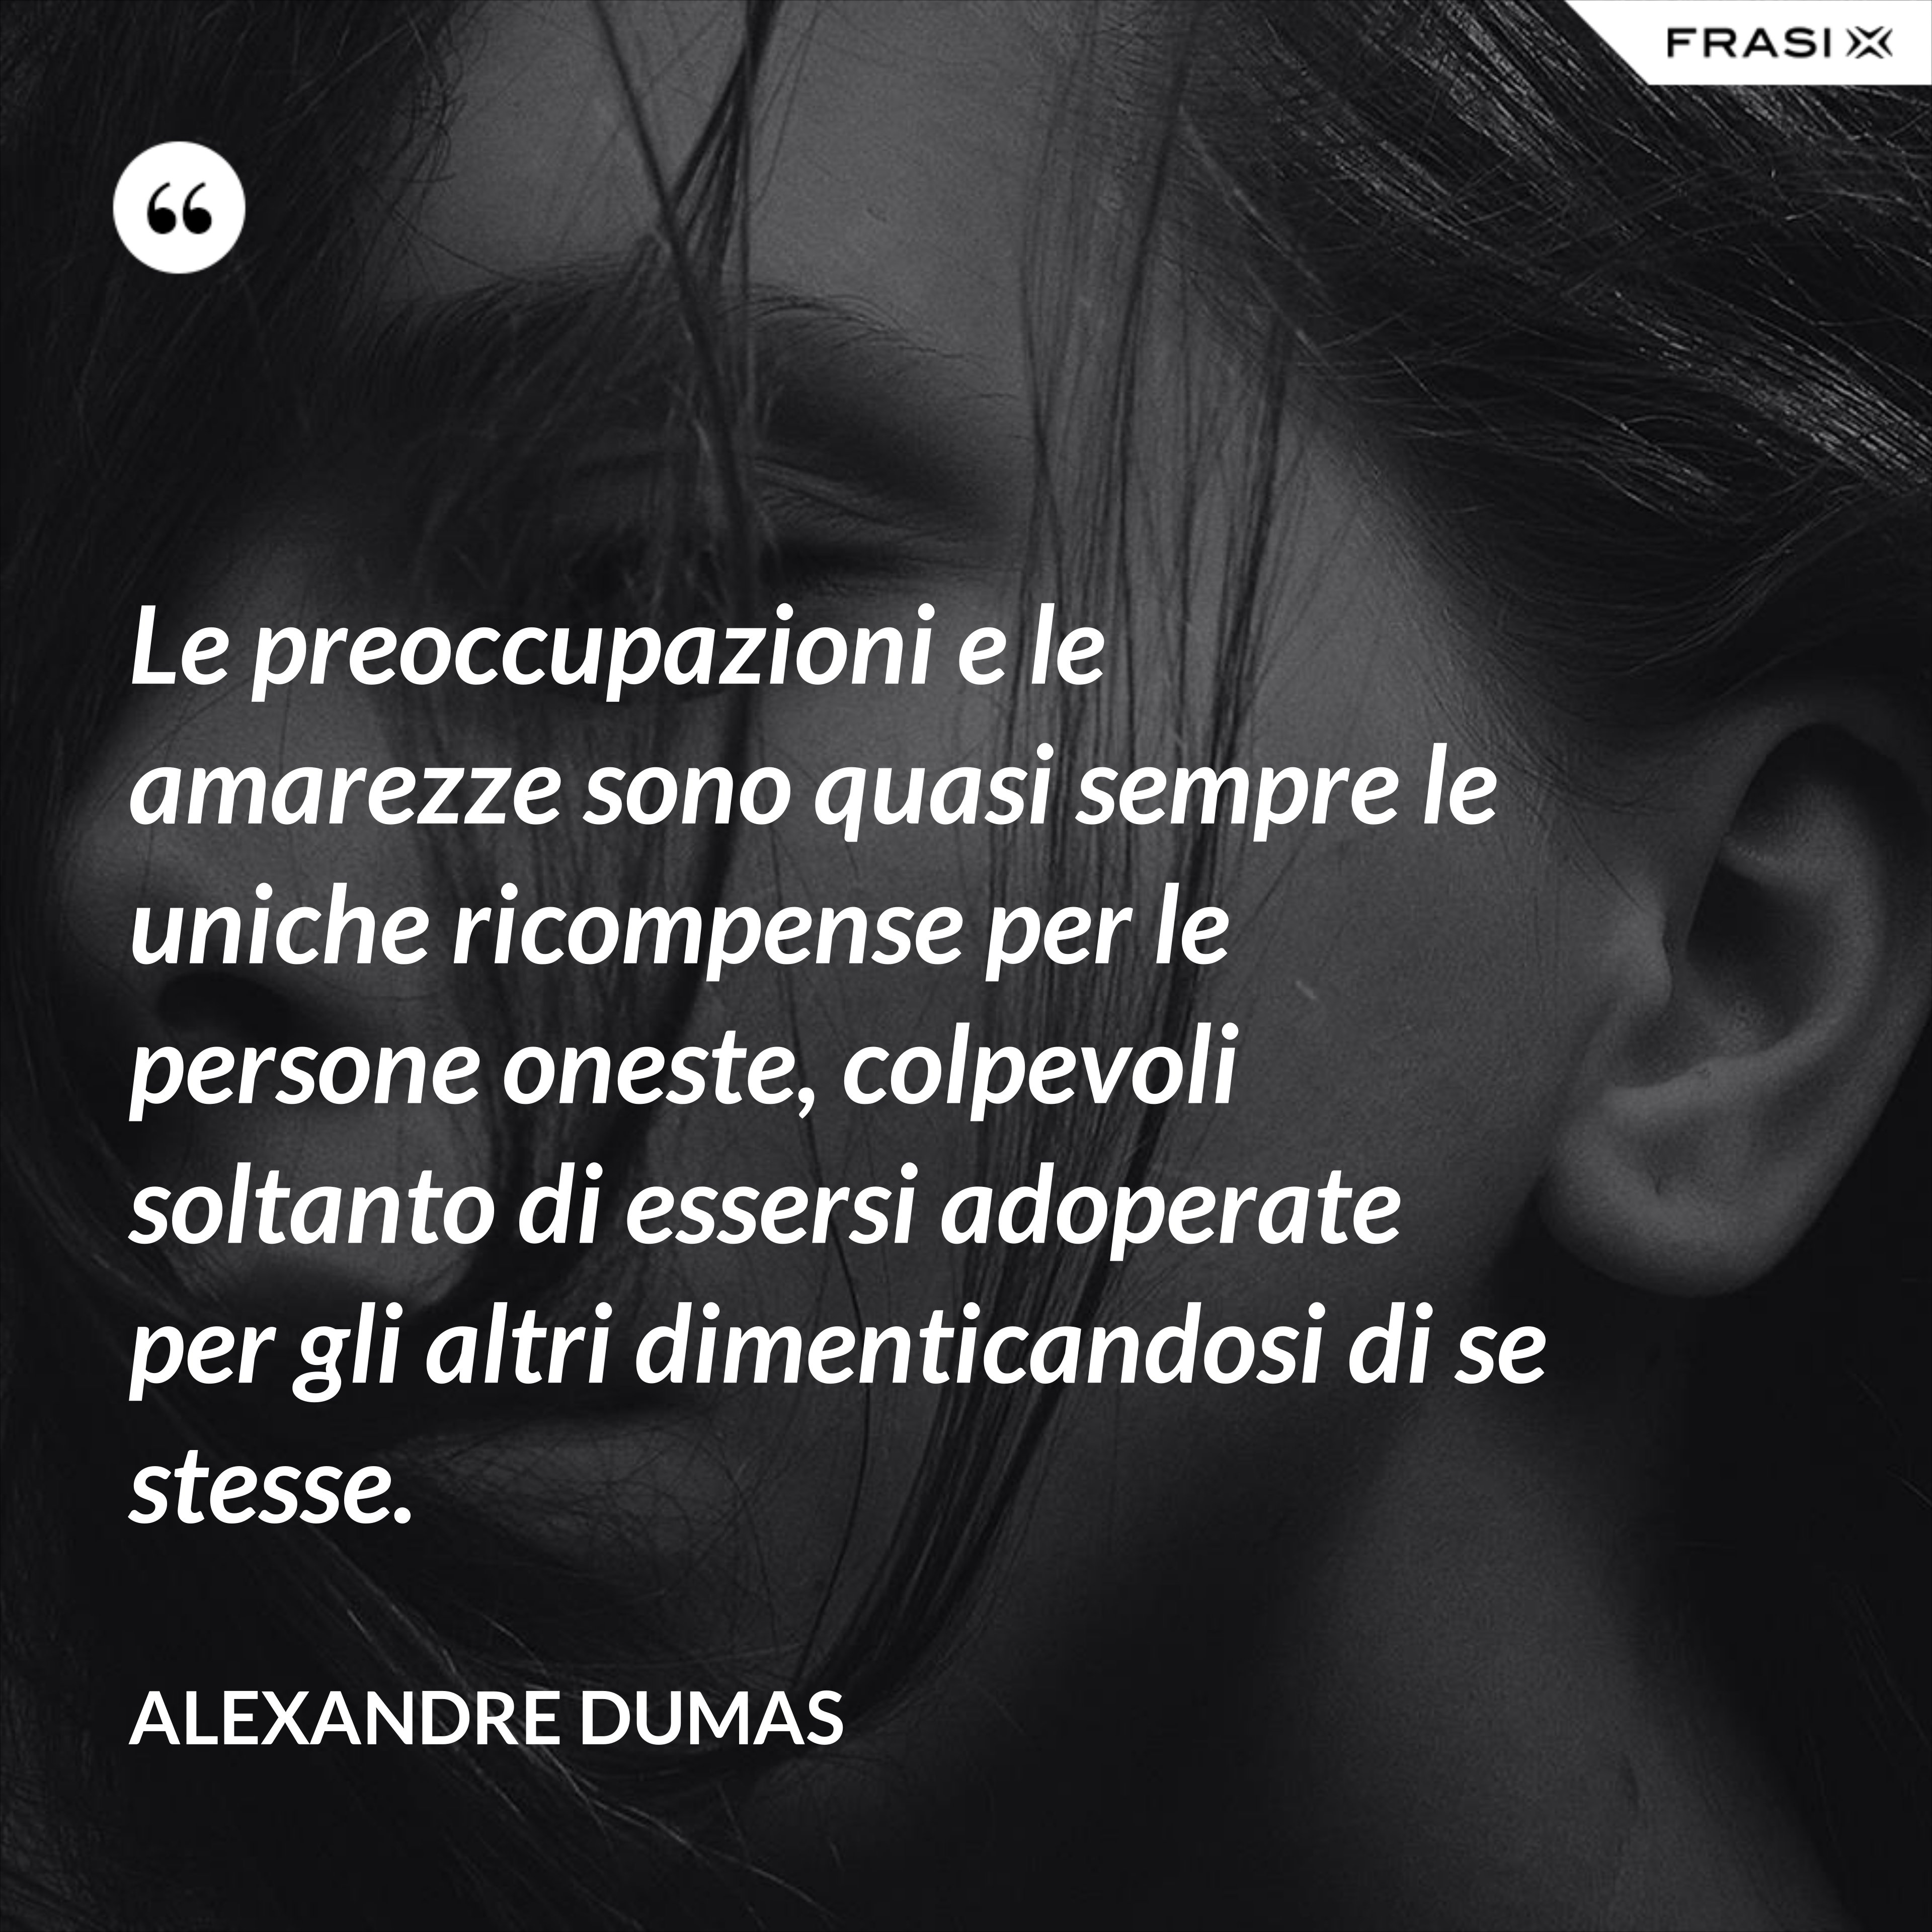 Le preoccupazioni e le amarezze sono quasi sempre le uniche ricompense per le persone oneste, colpevoli soltanto di essersi adoperate per gli altri dimenticandosi di se stesse. - Alexandre Dumas